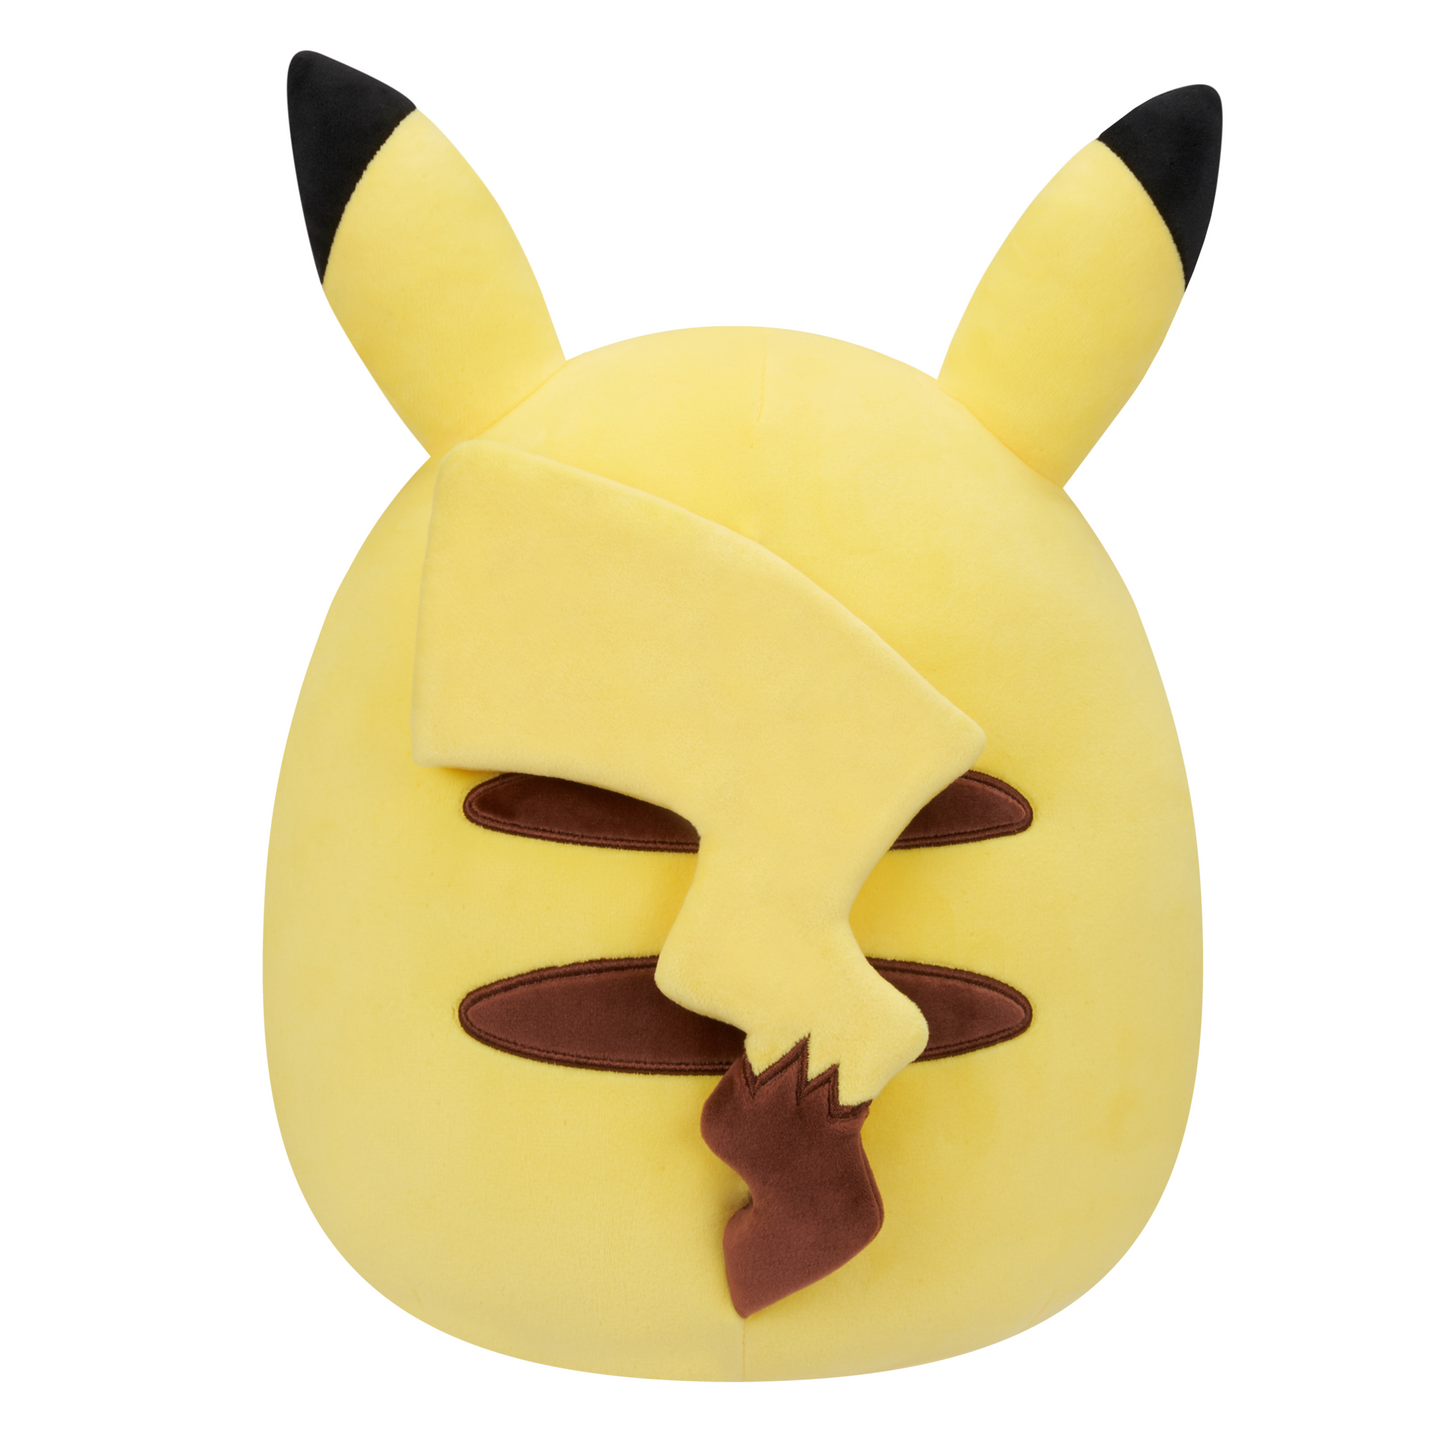 Pokemon - Pikachu Squishmallow 10" 25cm Super Soft Plush